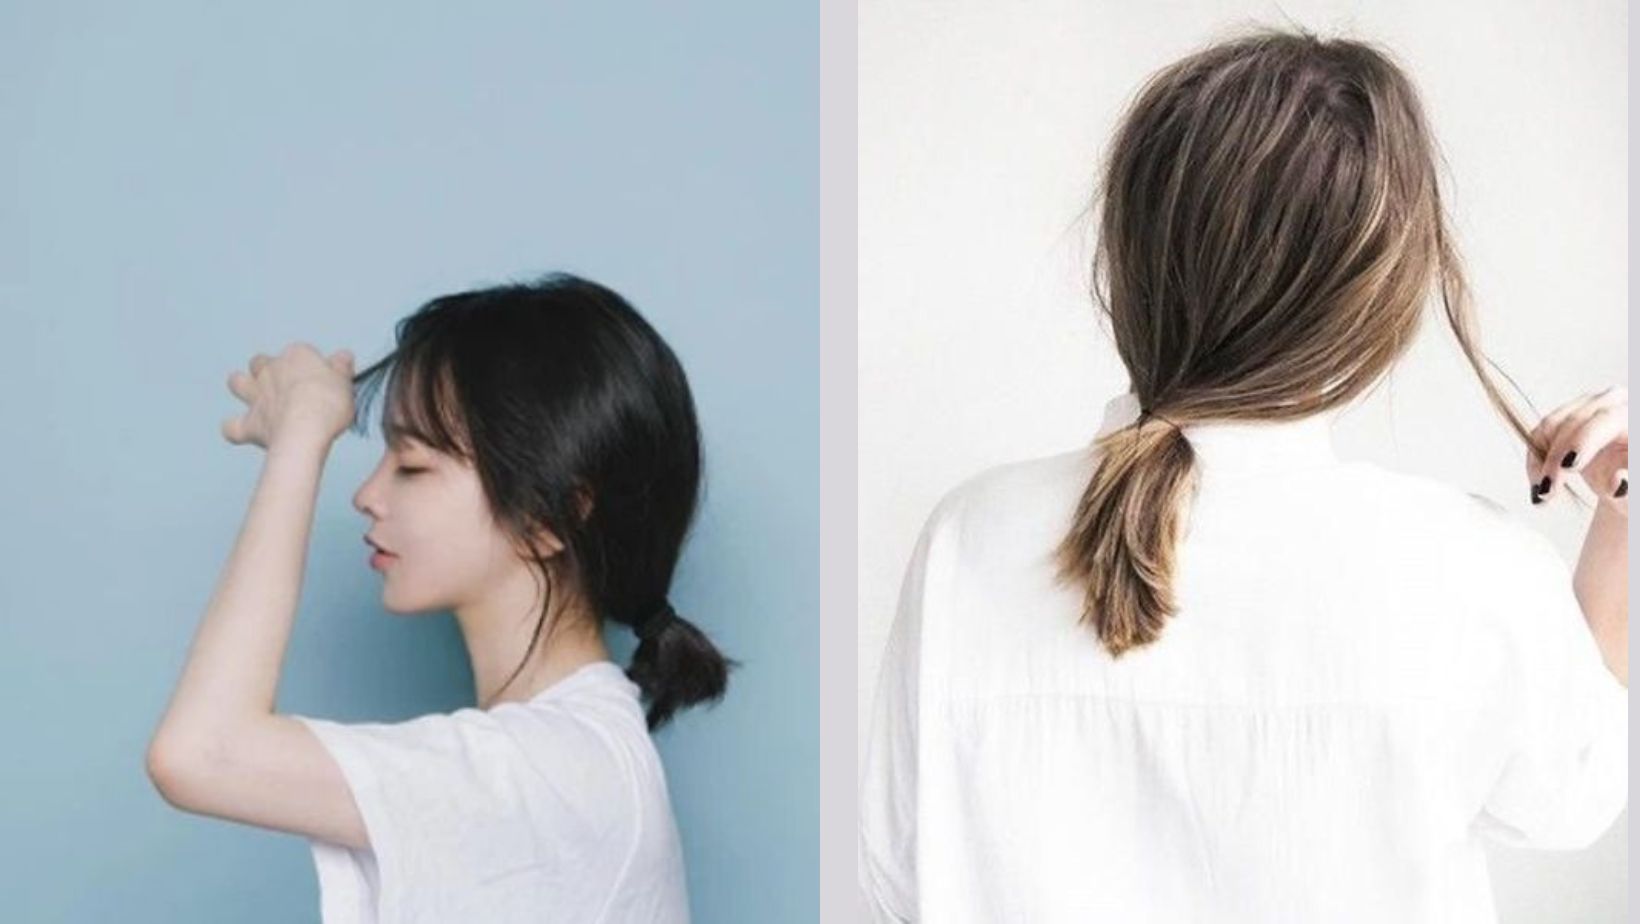 5 cách tạo kiểu tóc ngắn đẹp cho phái nữ - 2sao